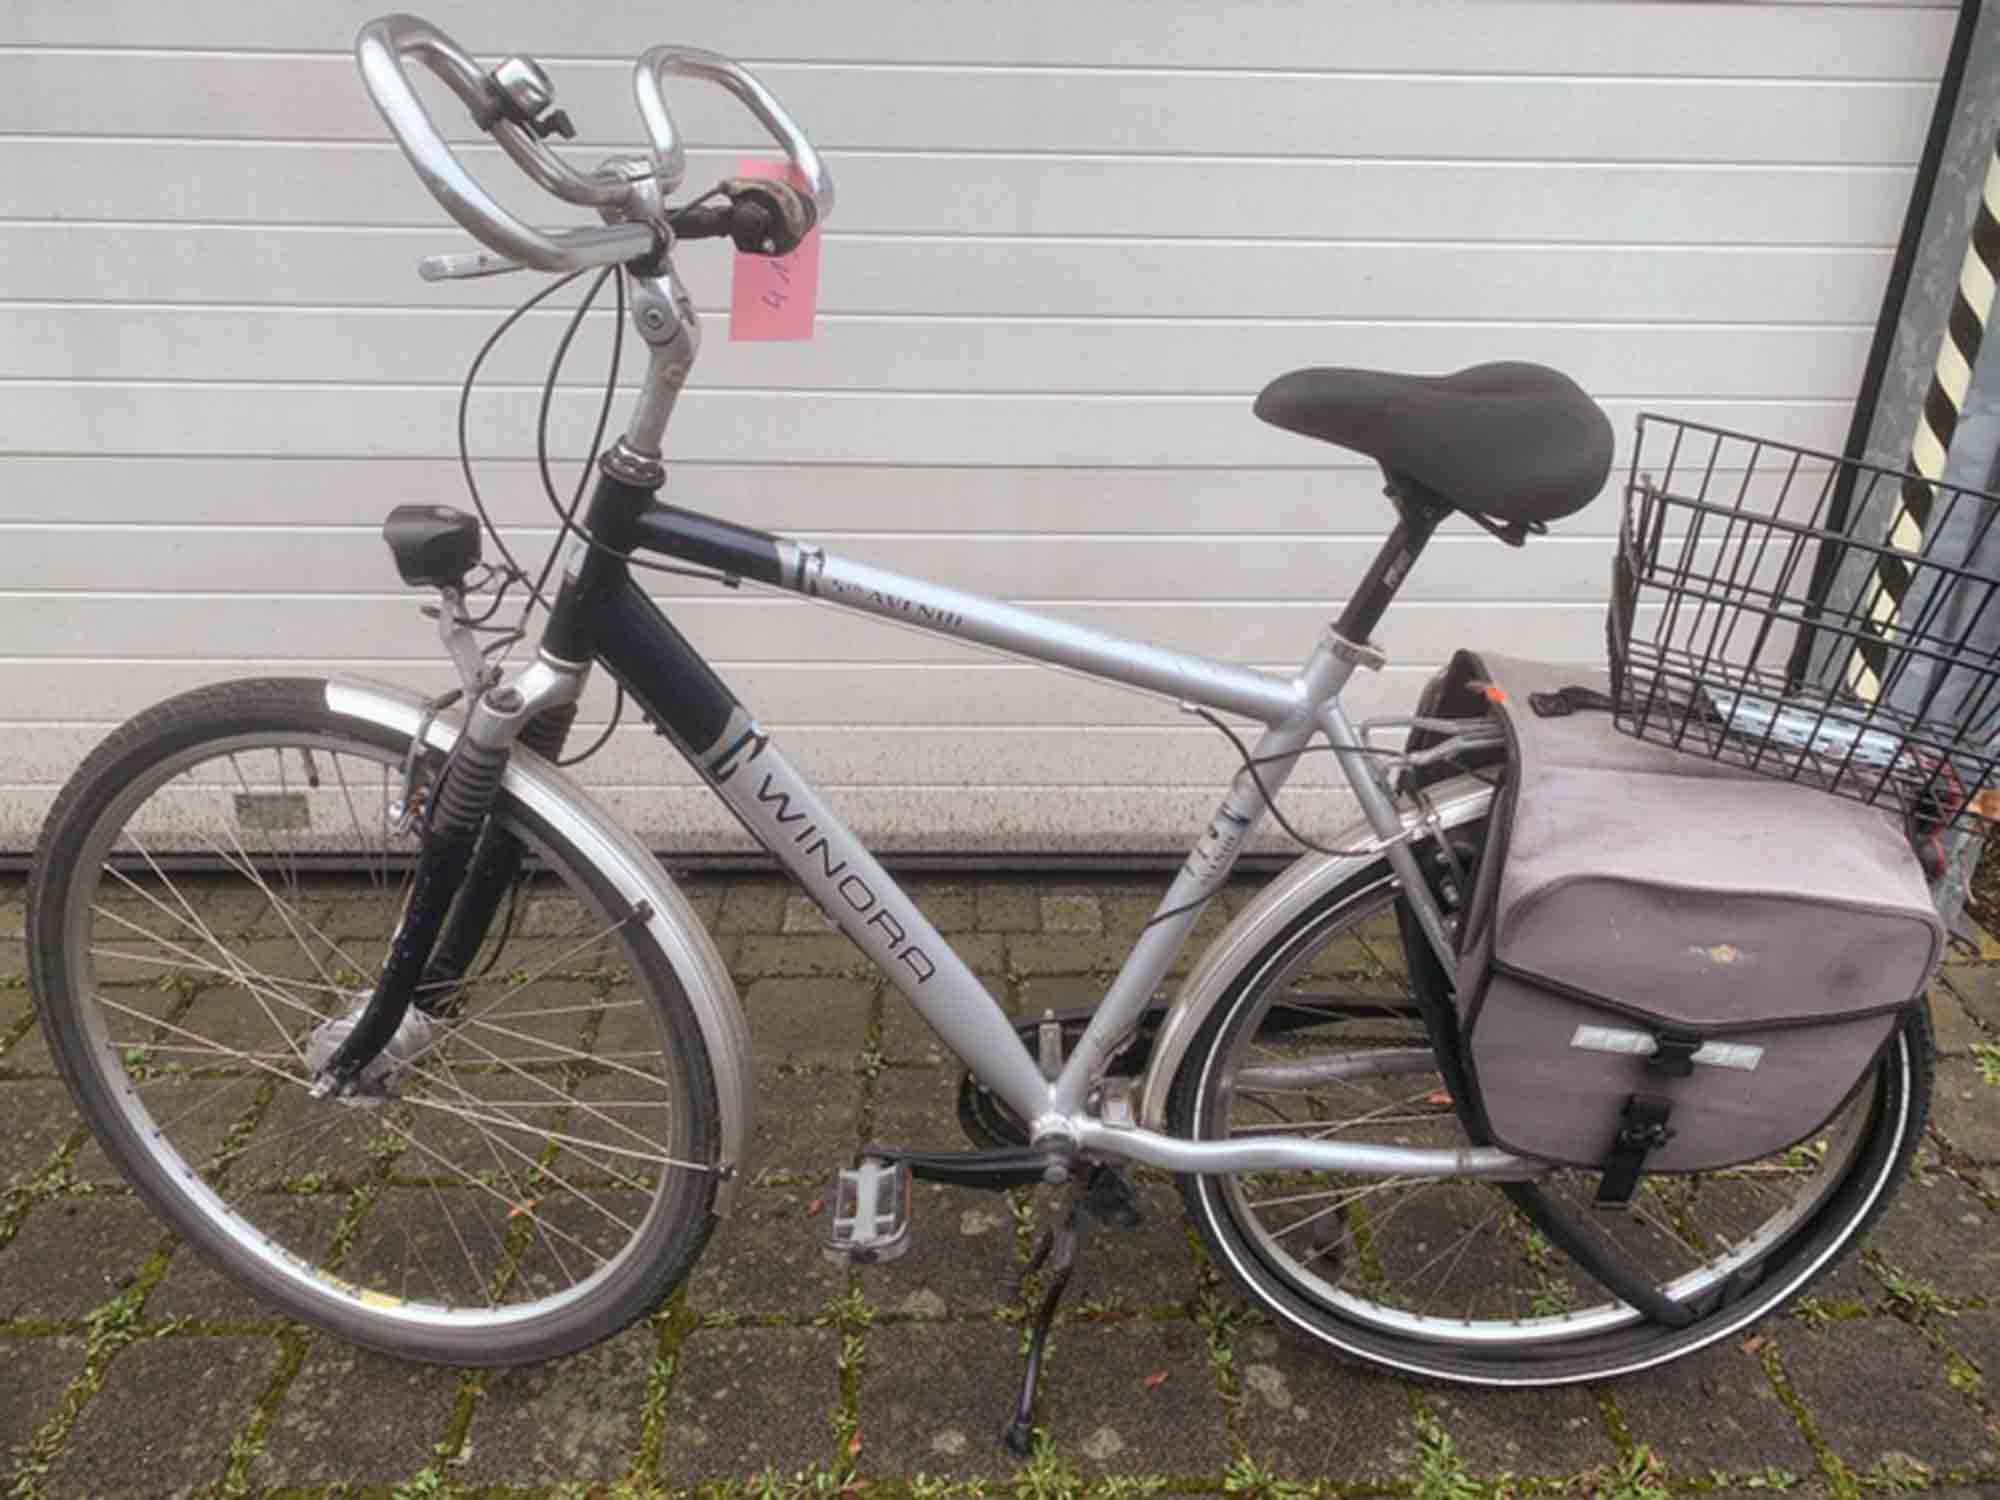 Polizei Gütersloh stellt gestohlenes Fahrrad sicher – Eigentümer gesucht